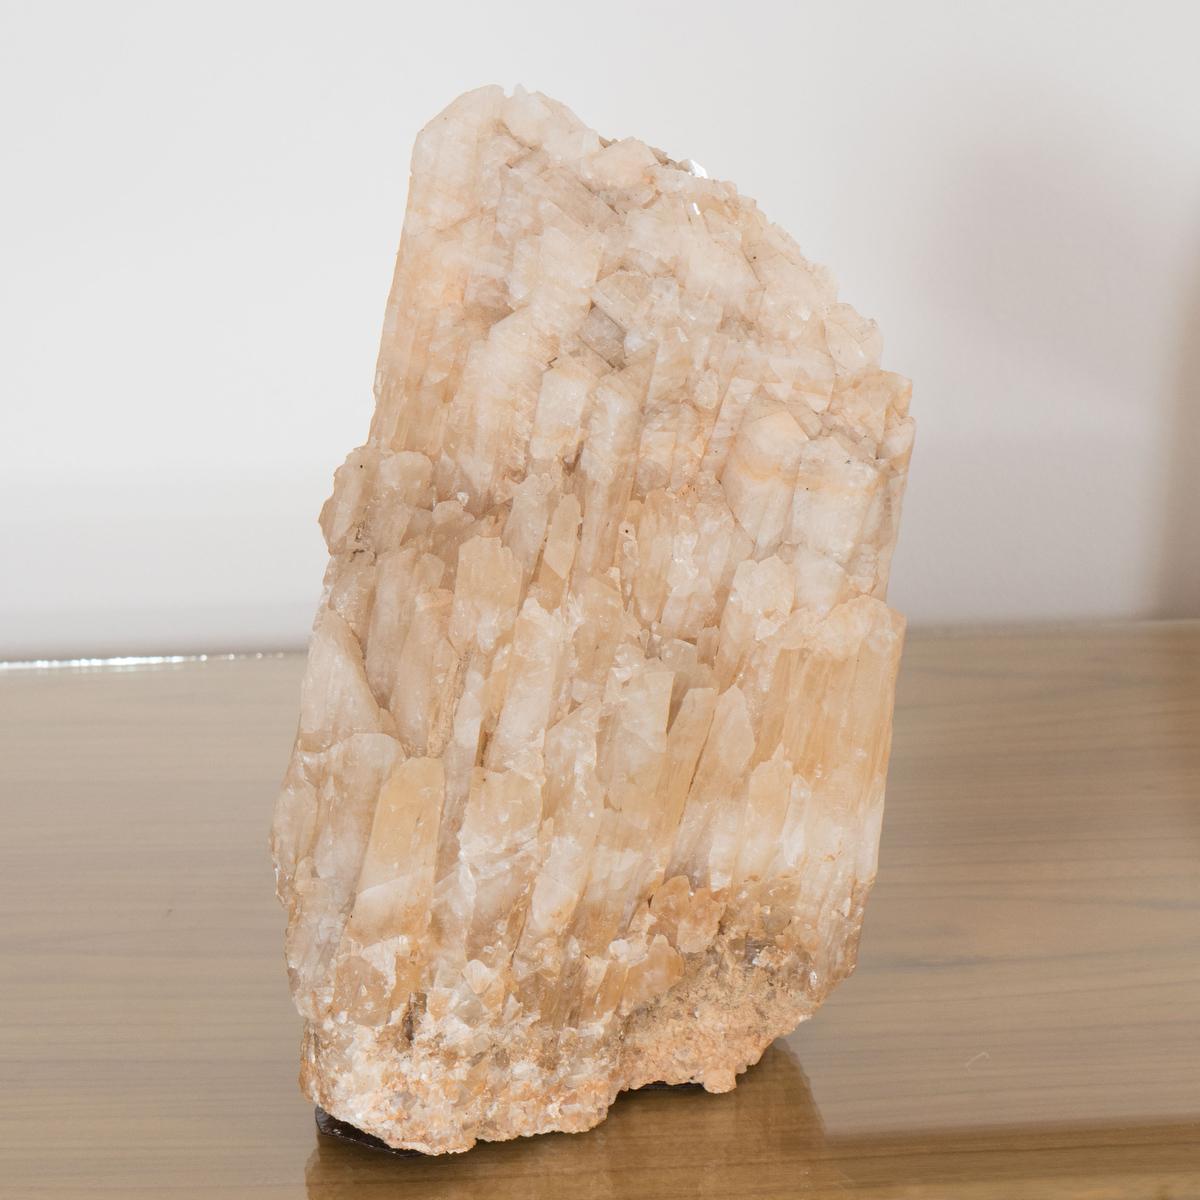 Natural quartz mineral fragment.